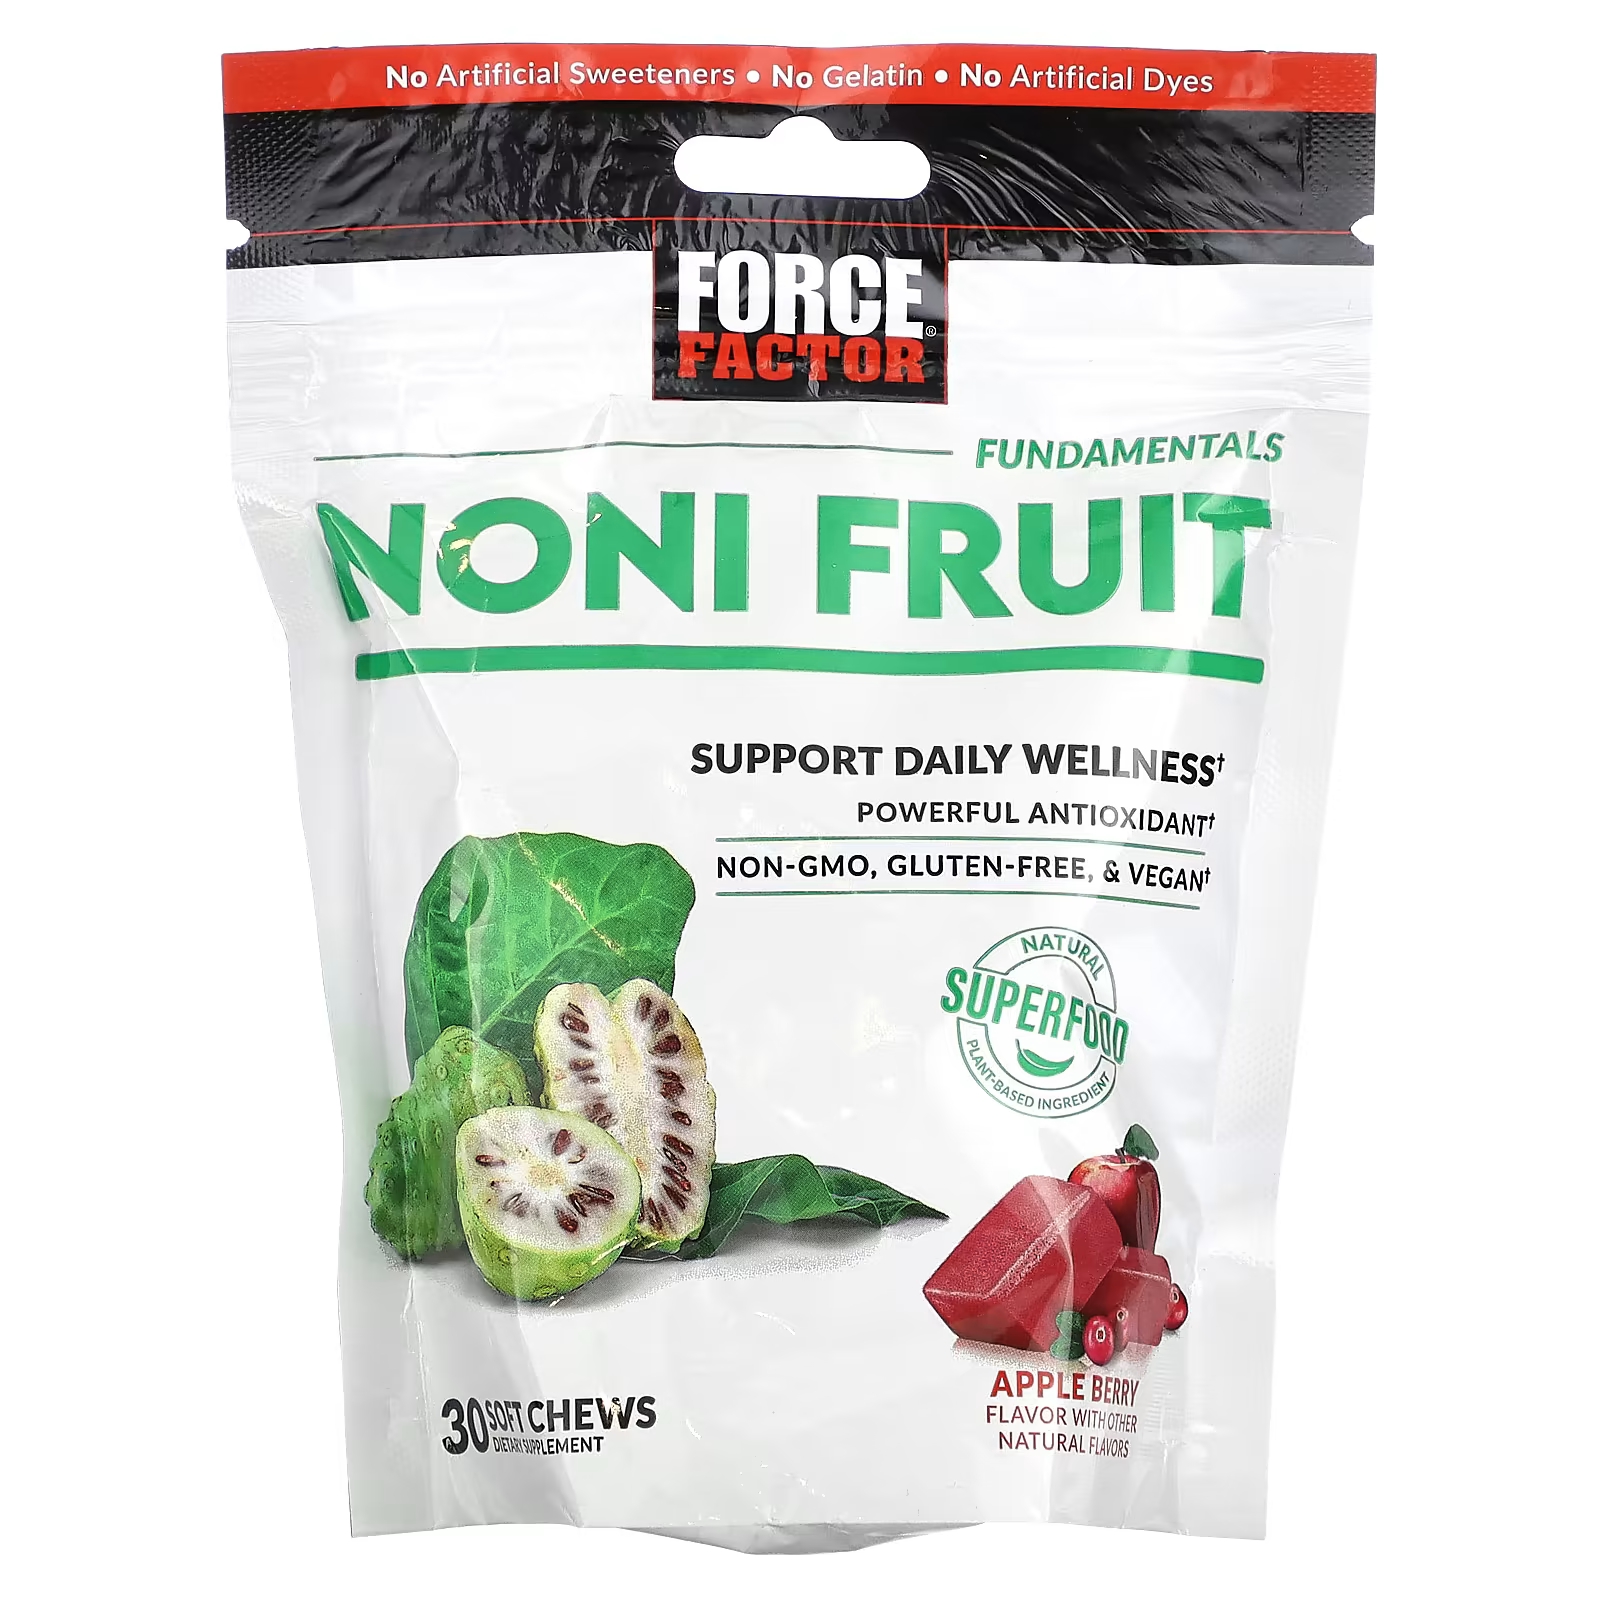 Force Factor Fundamentals Noni Fruit Apple Berry 30 мягких жевательных конфет force factor fundamentals гранат 30 жевательных таблеток